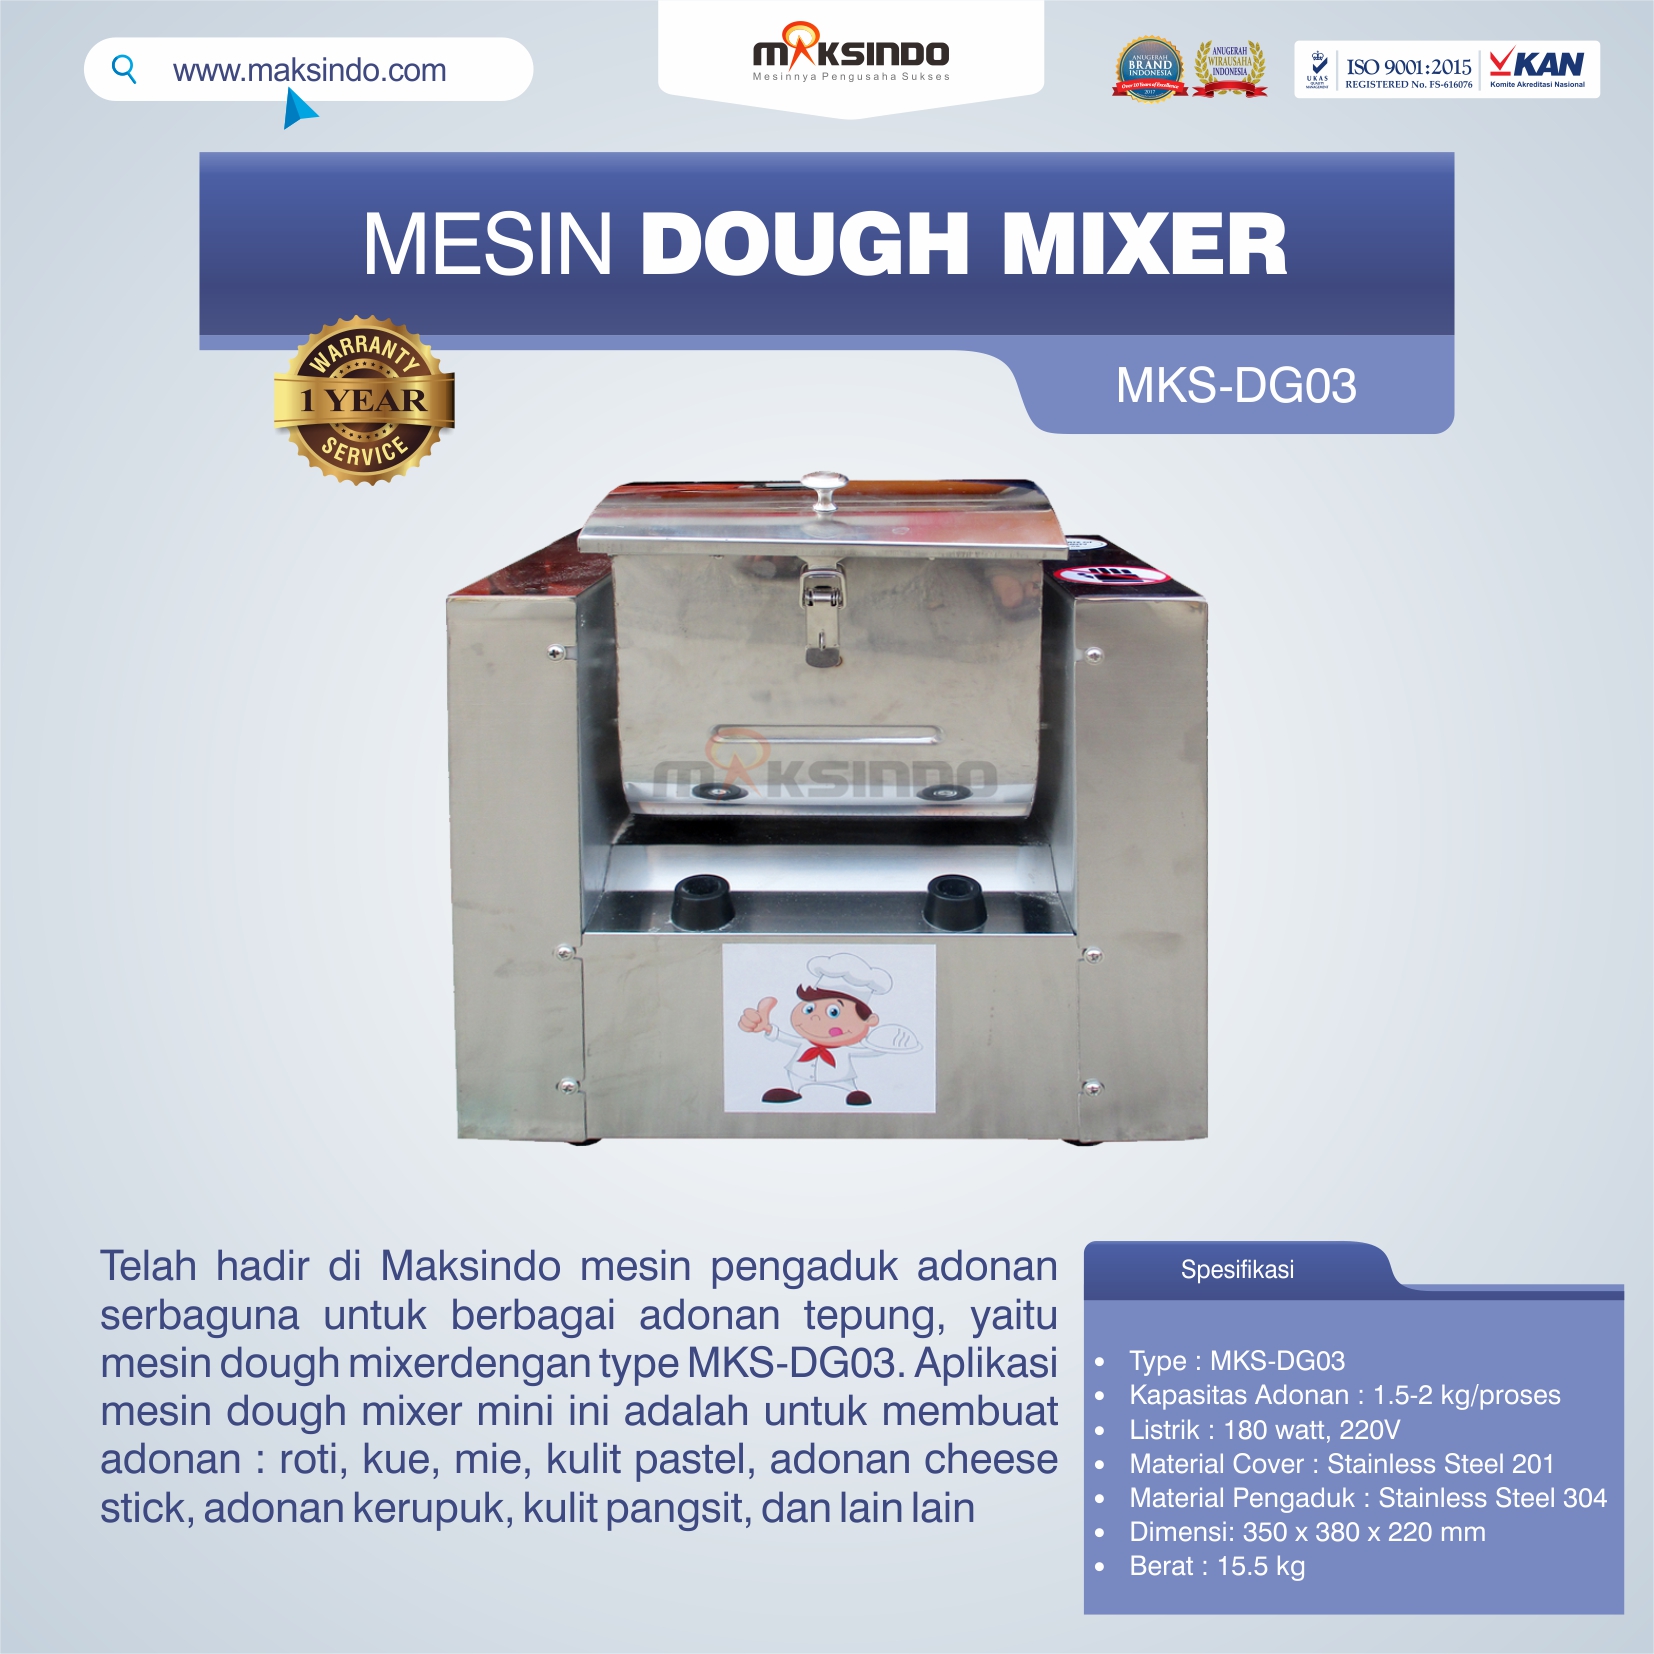 Jual Mesin Dough Mixer MKS-DG03 di Tangerang